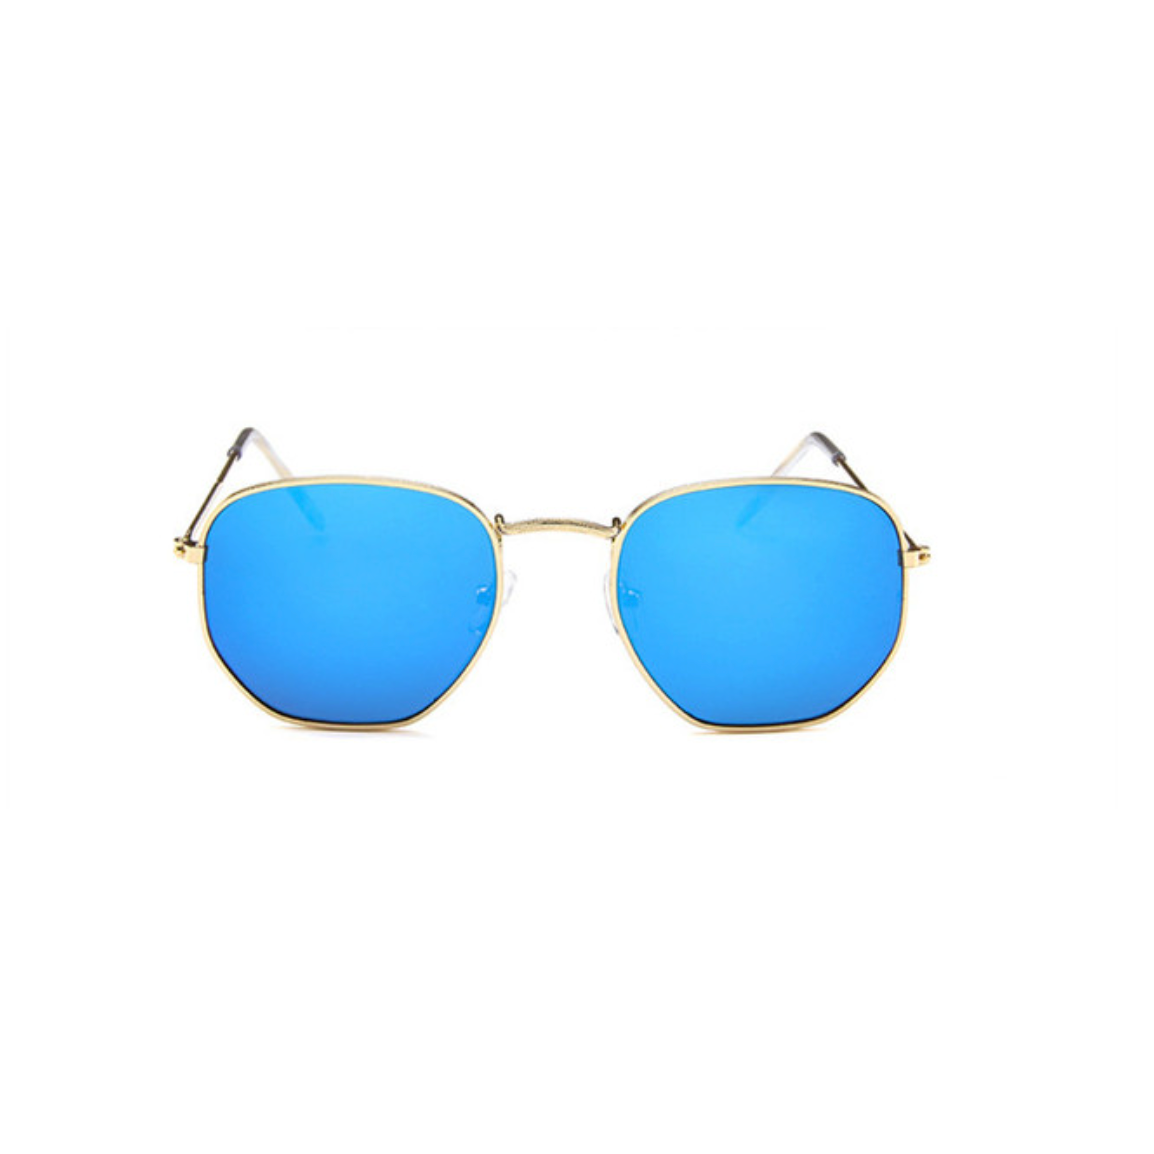 Damskie klasyczne okulary przeciwsłoneczne - Niebieski / Uniwersalny